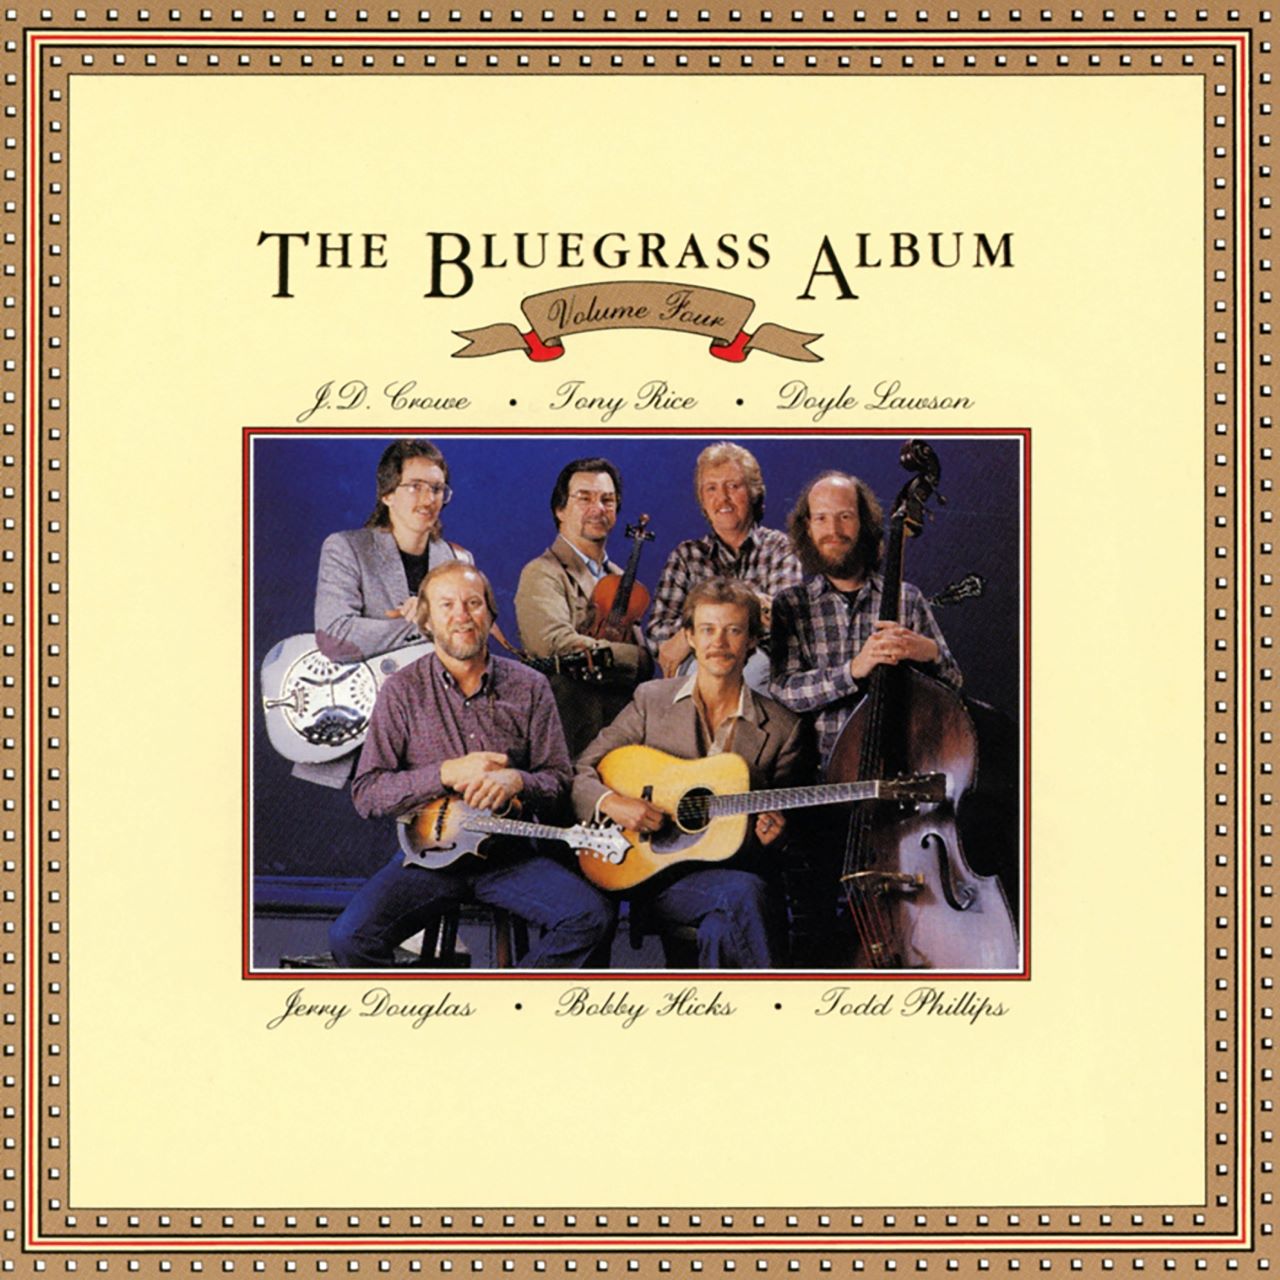 Bluegrass Album Band - The Bluegrass Album - Volume Four cover album